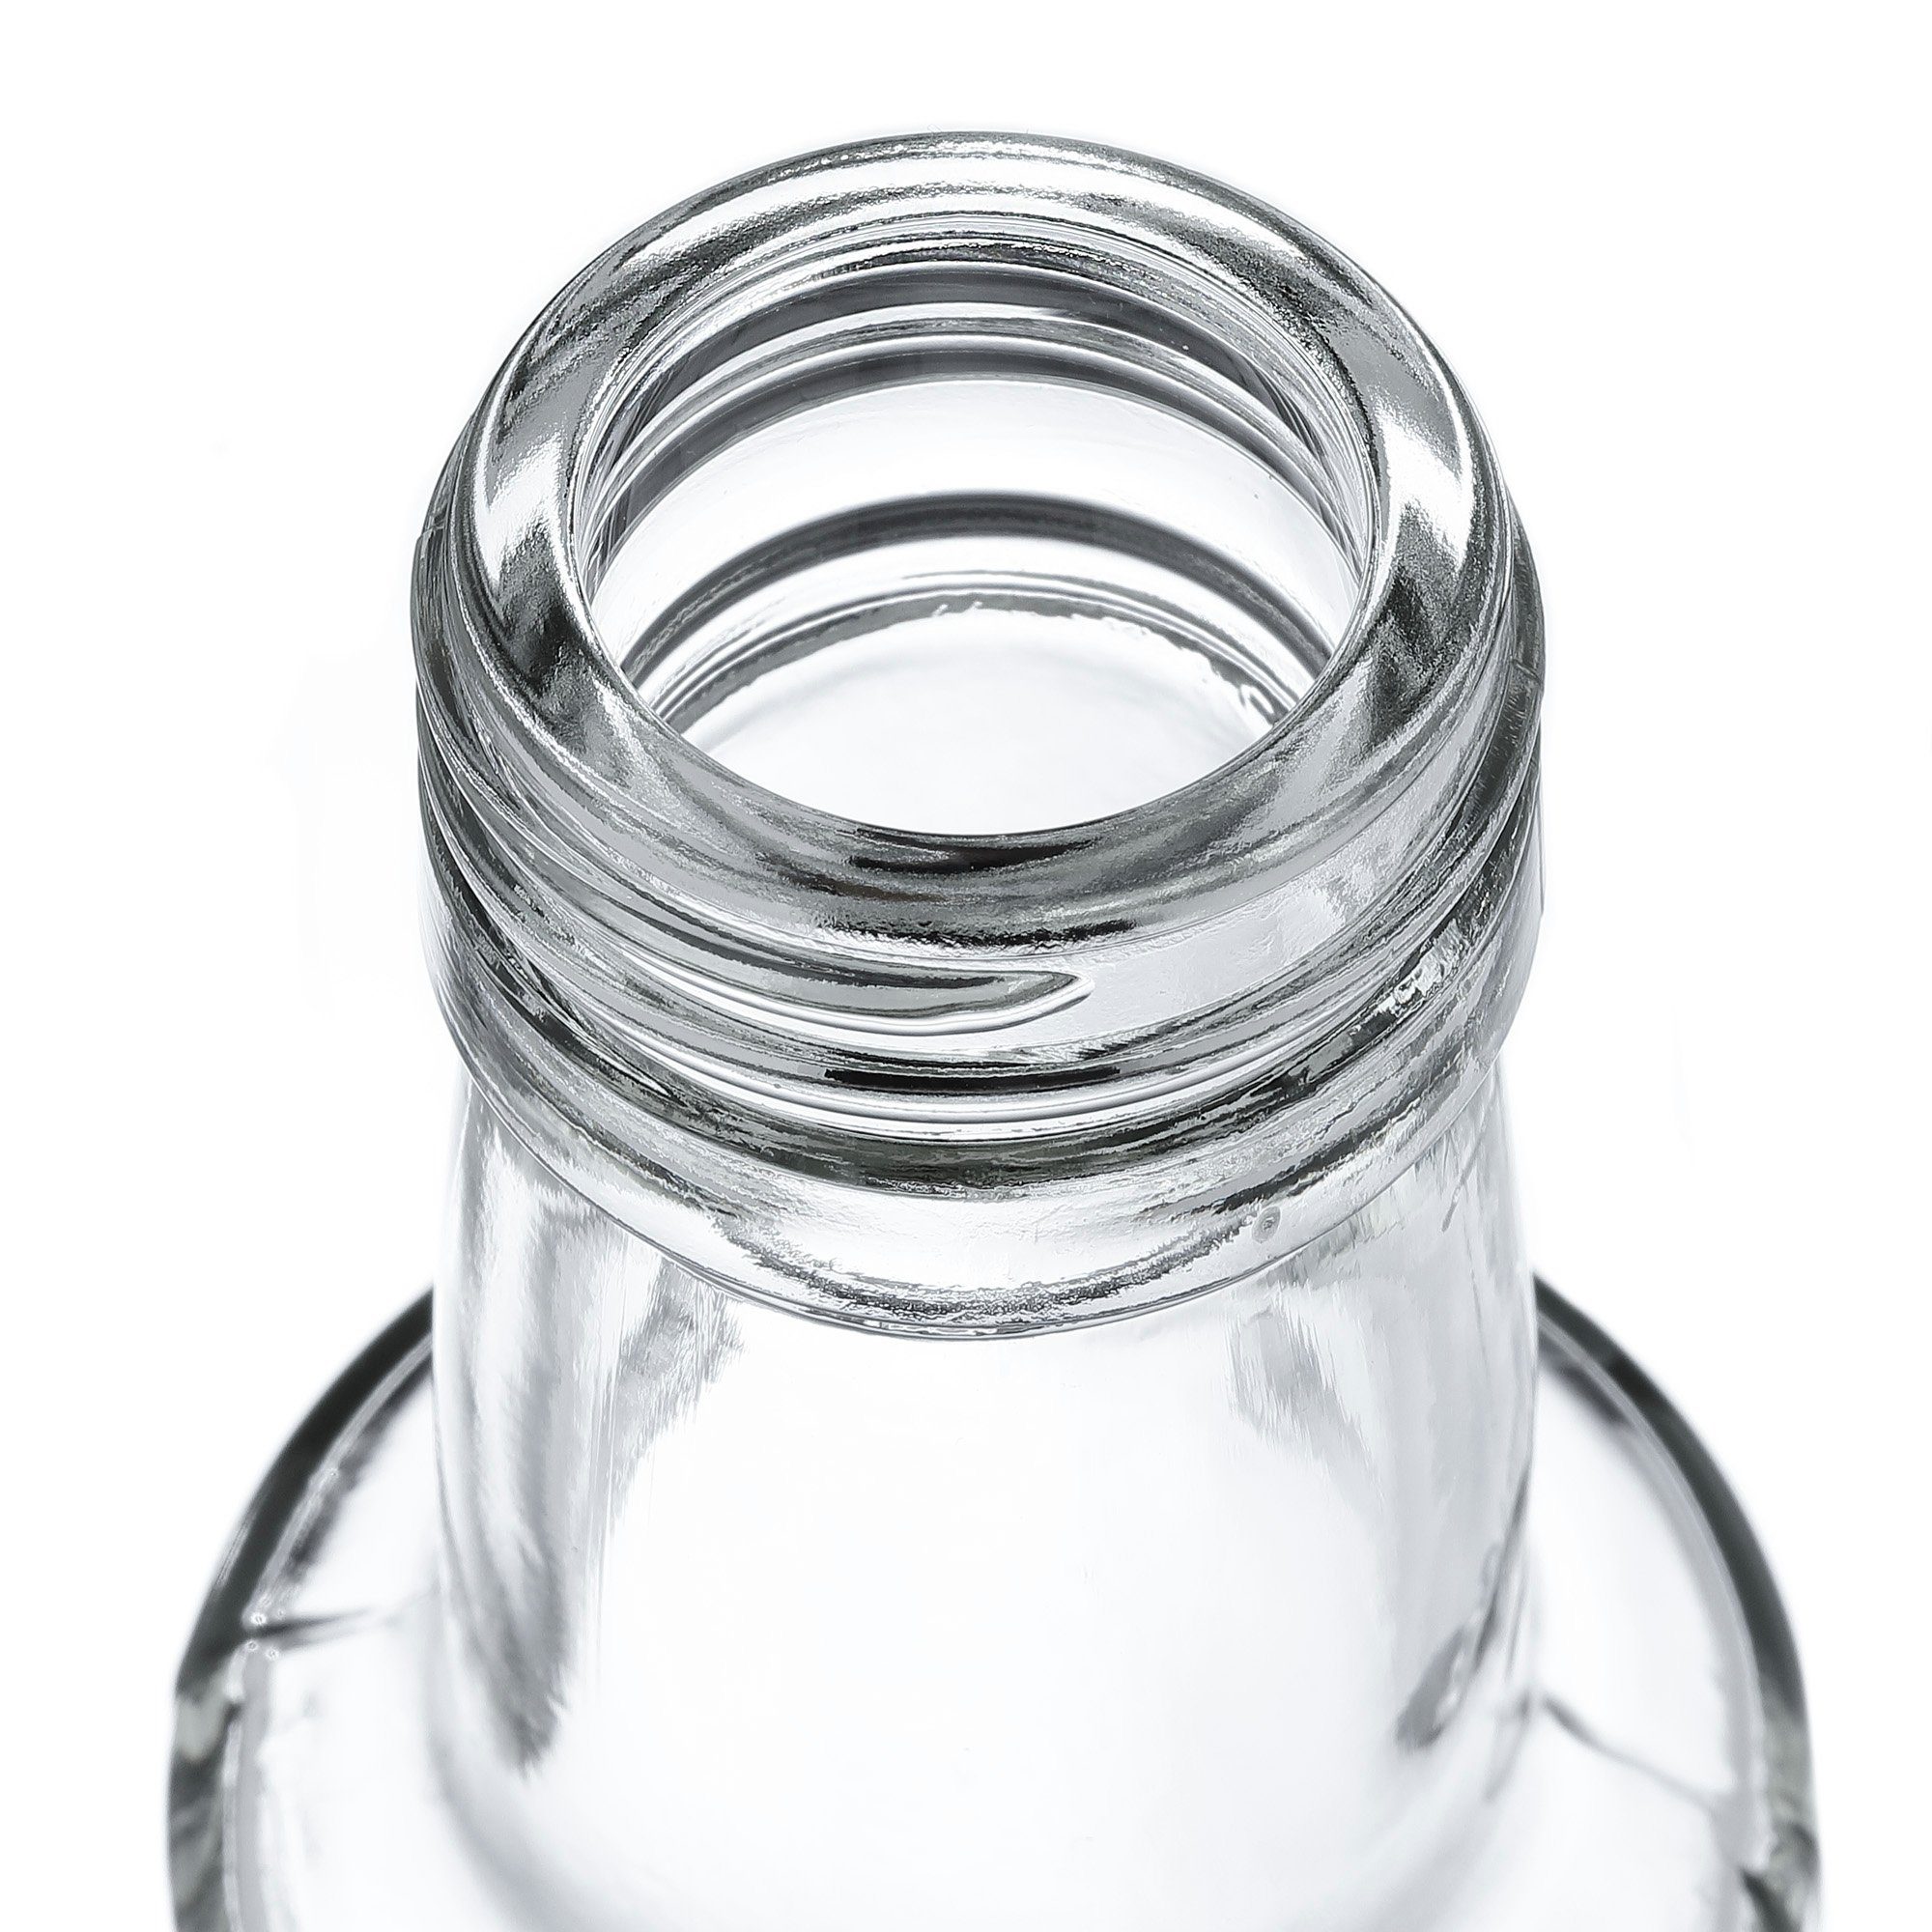 Goldrand, MamboCat 12er Glas silber + Glasflasche Schraubverschluss 250 Dorica Vorratsglas Set ml